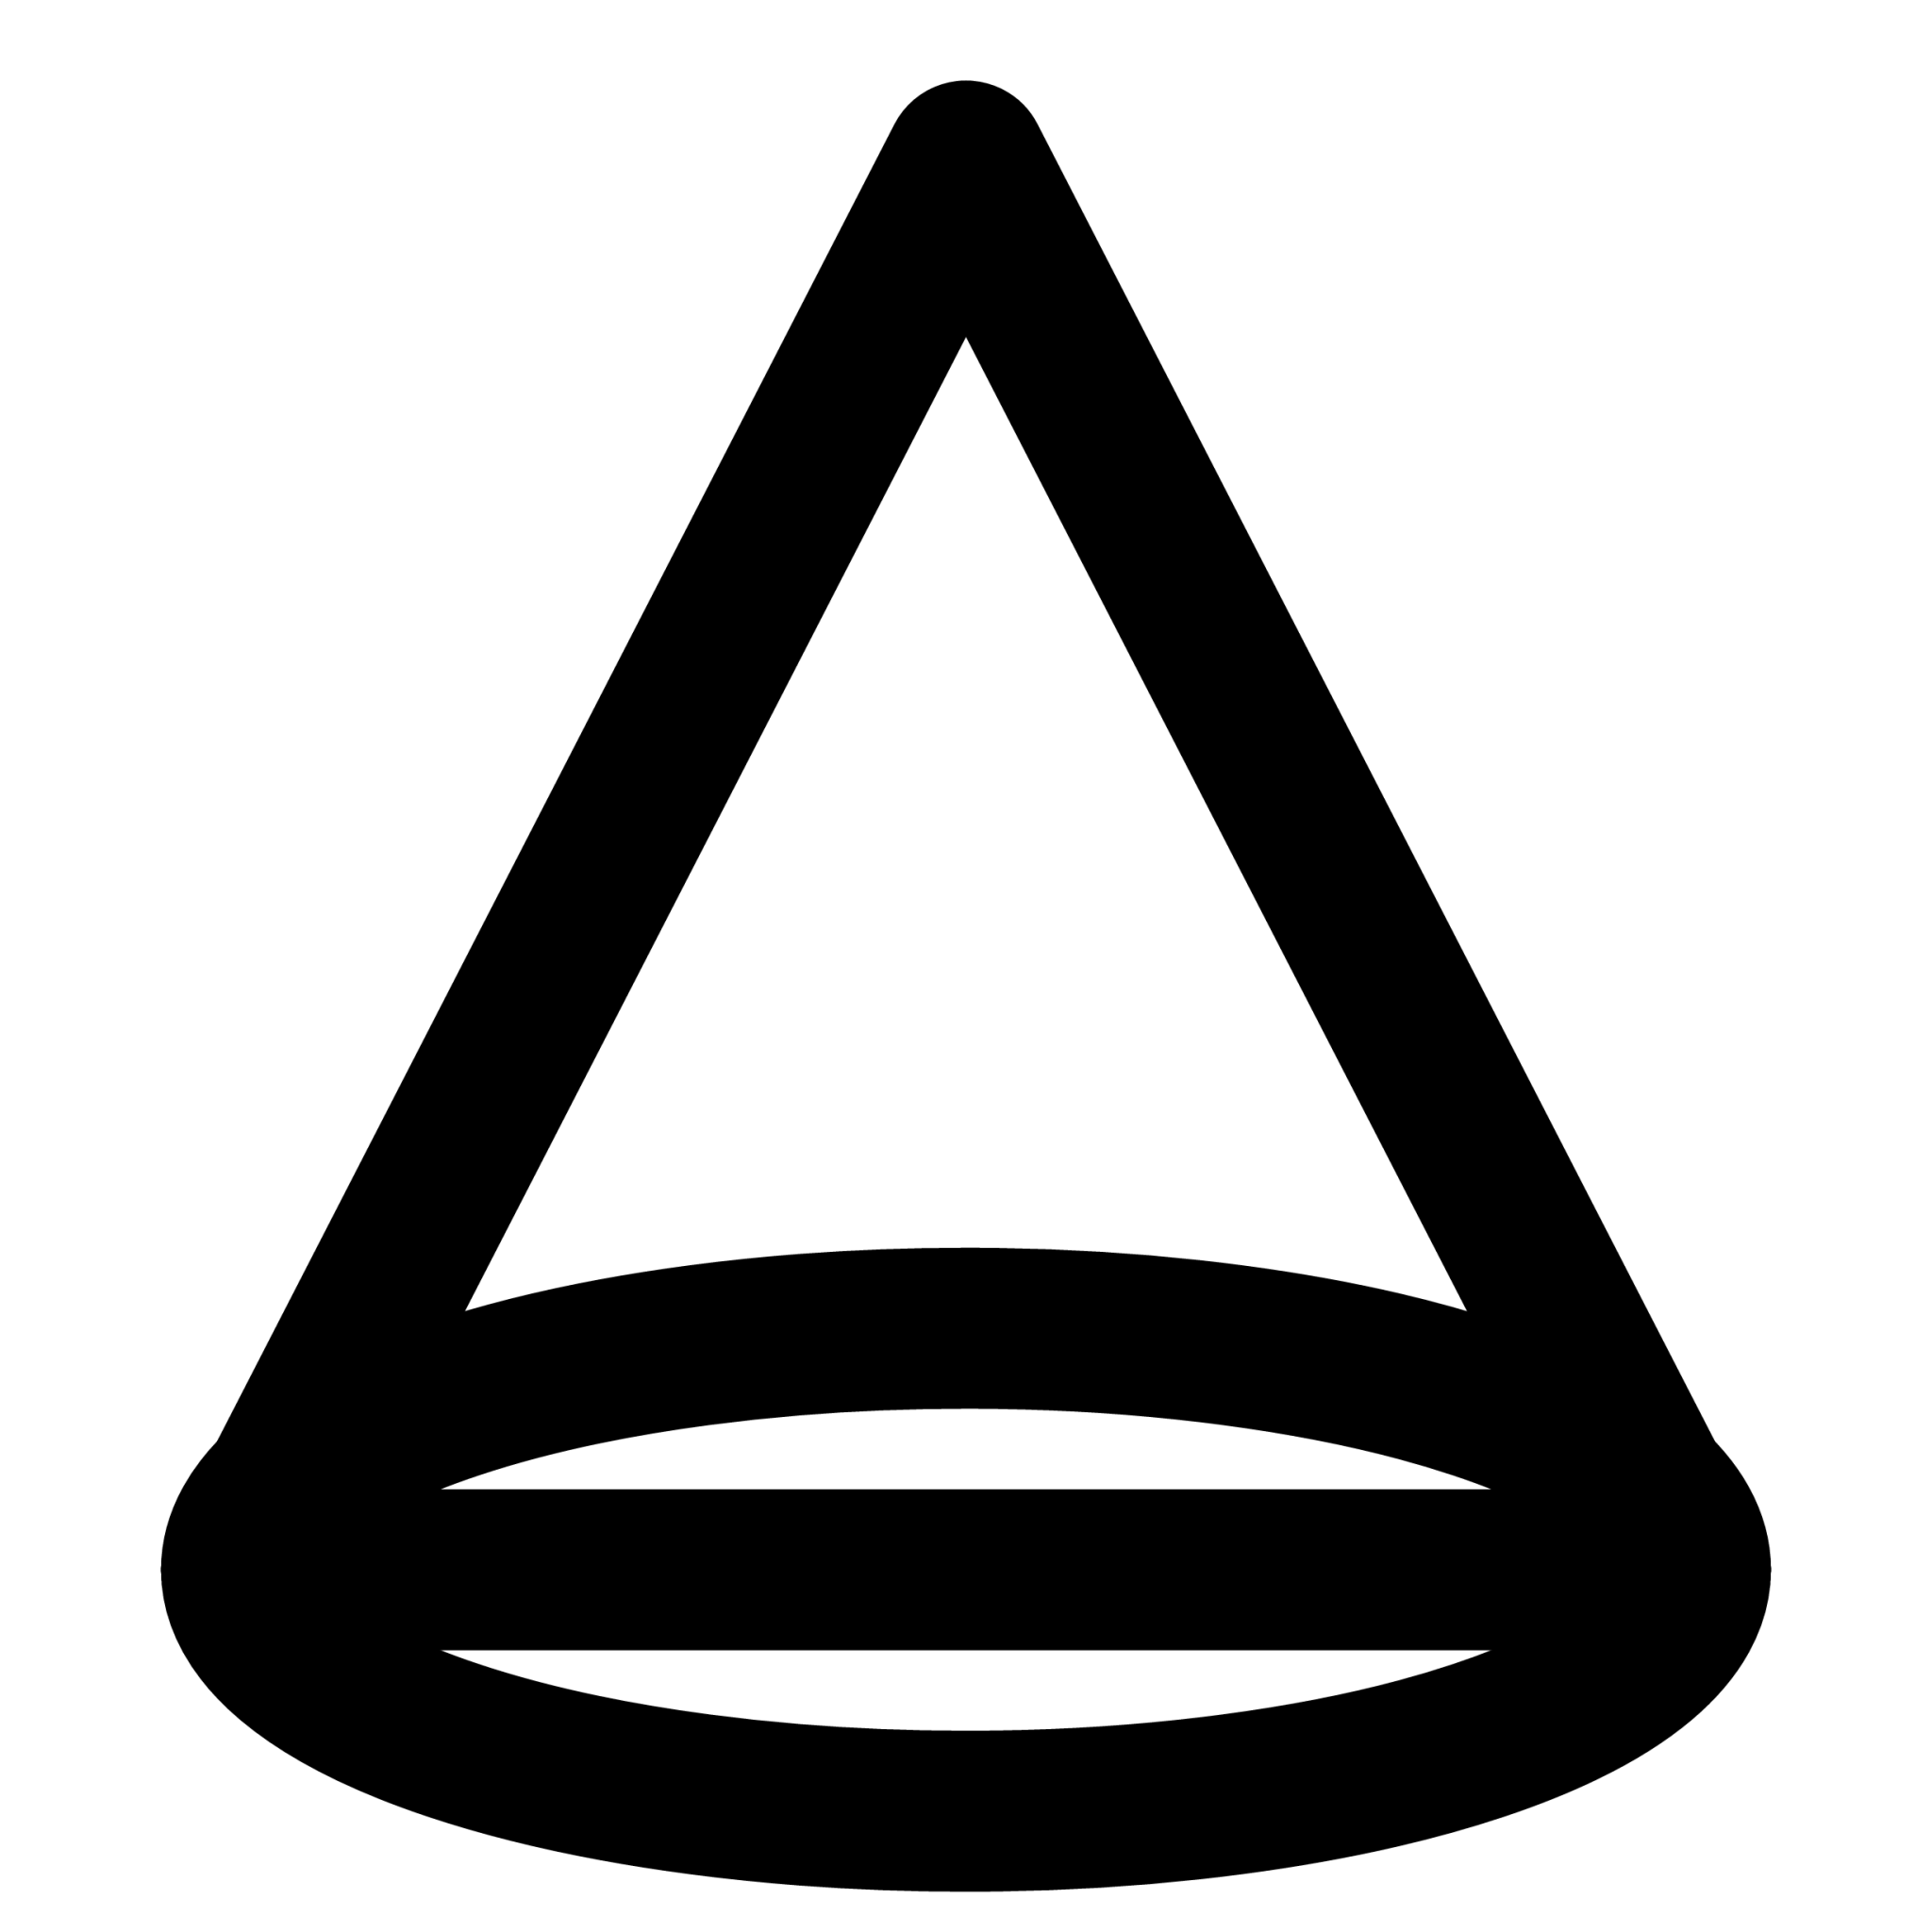 cone icon